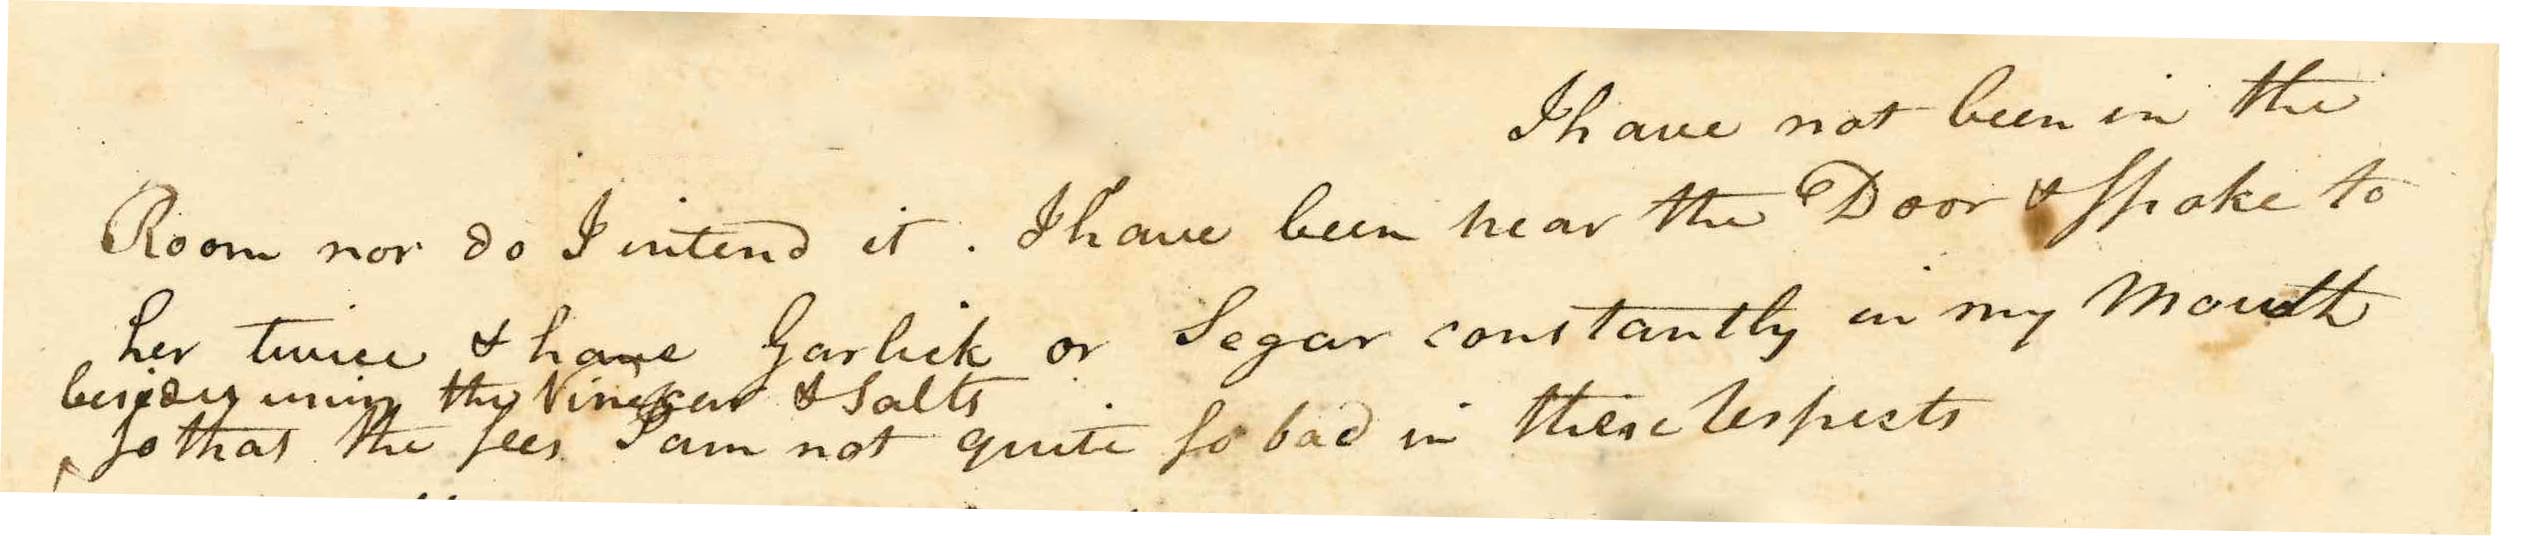 sample of handwritten letter